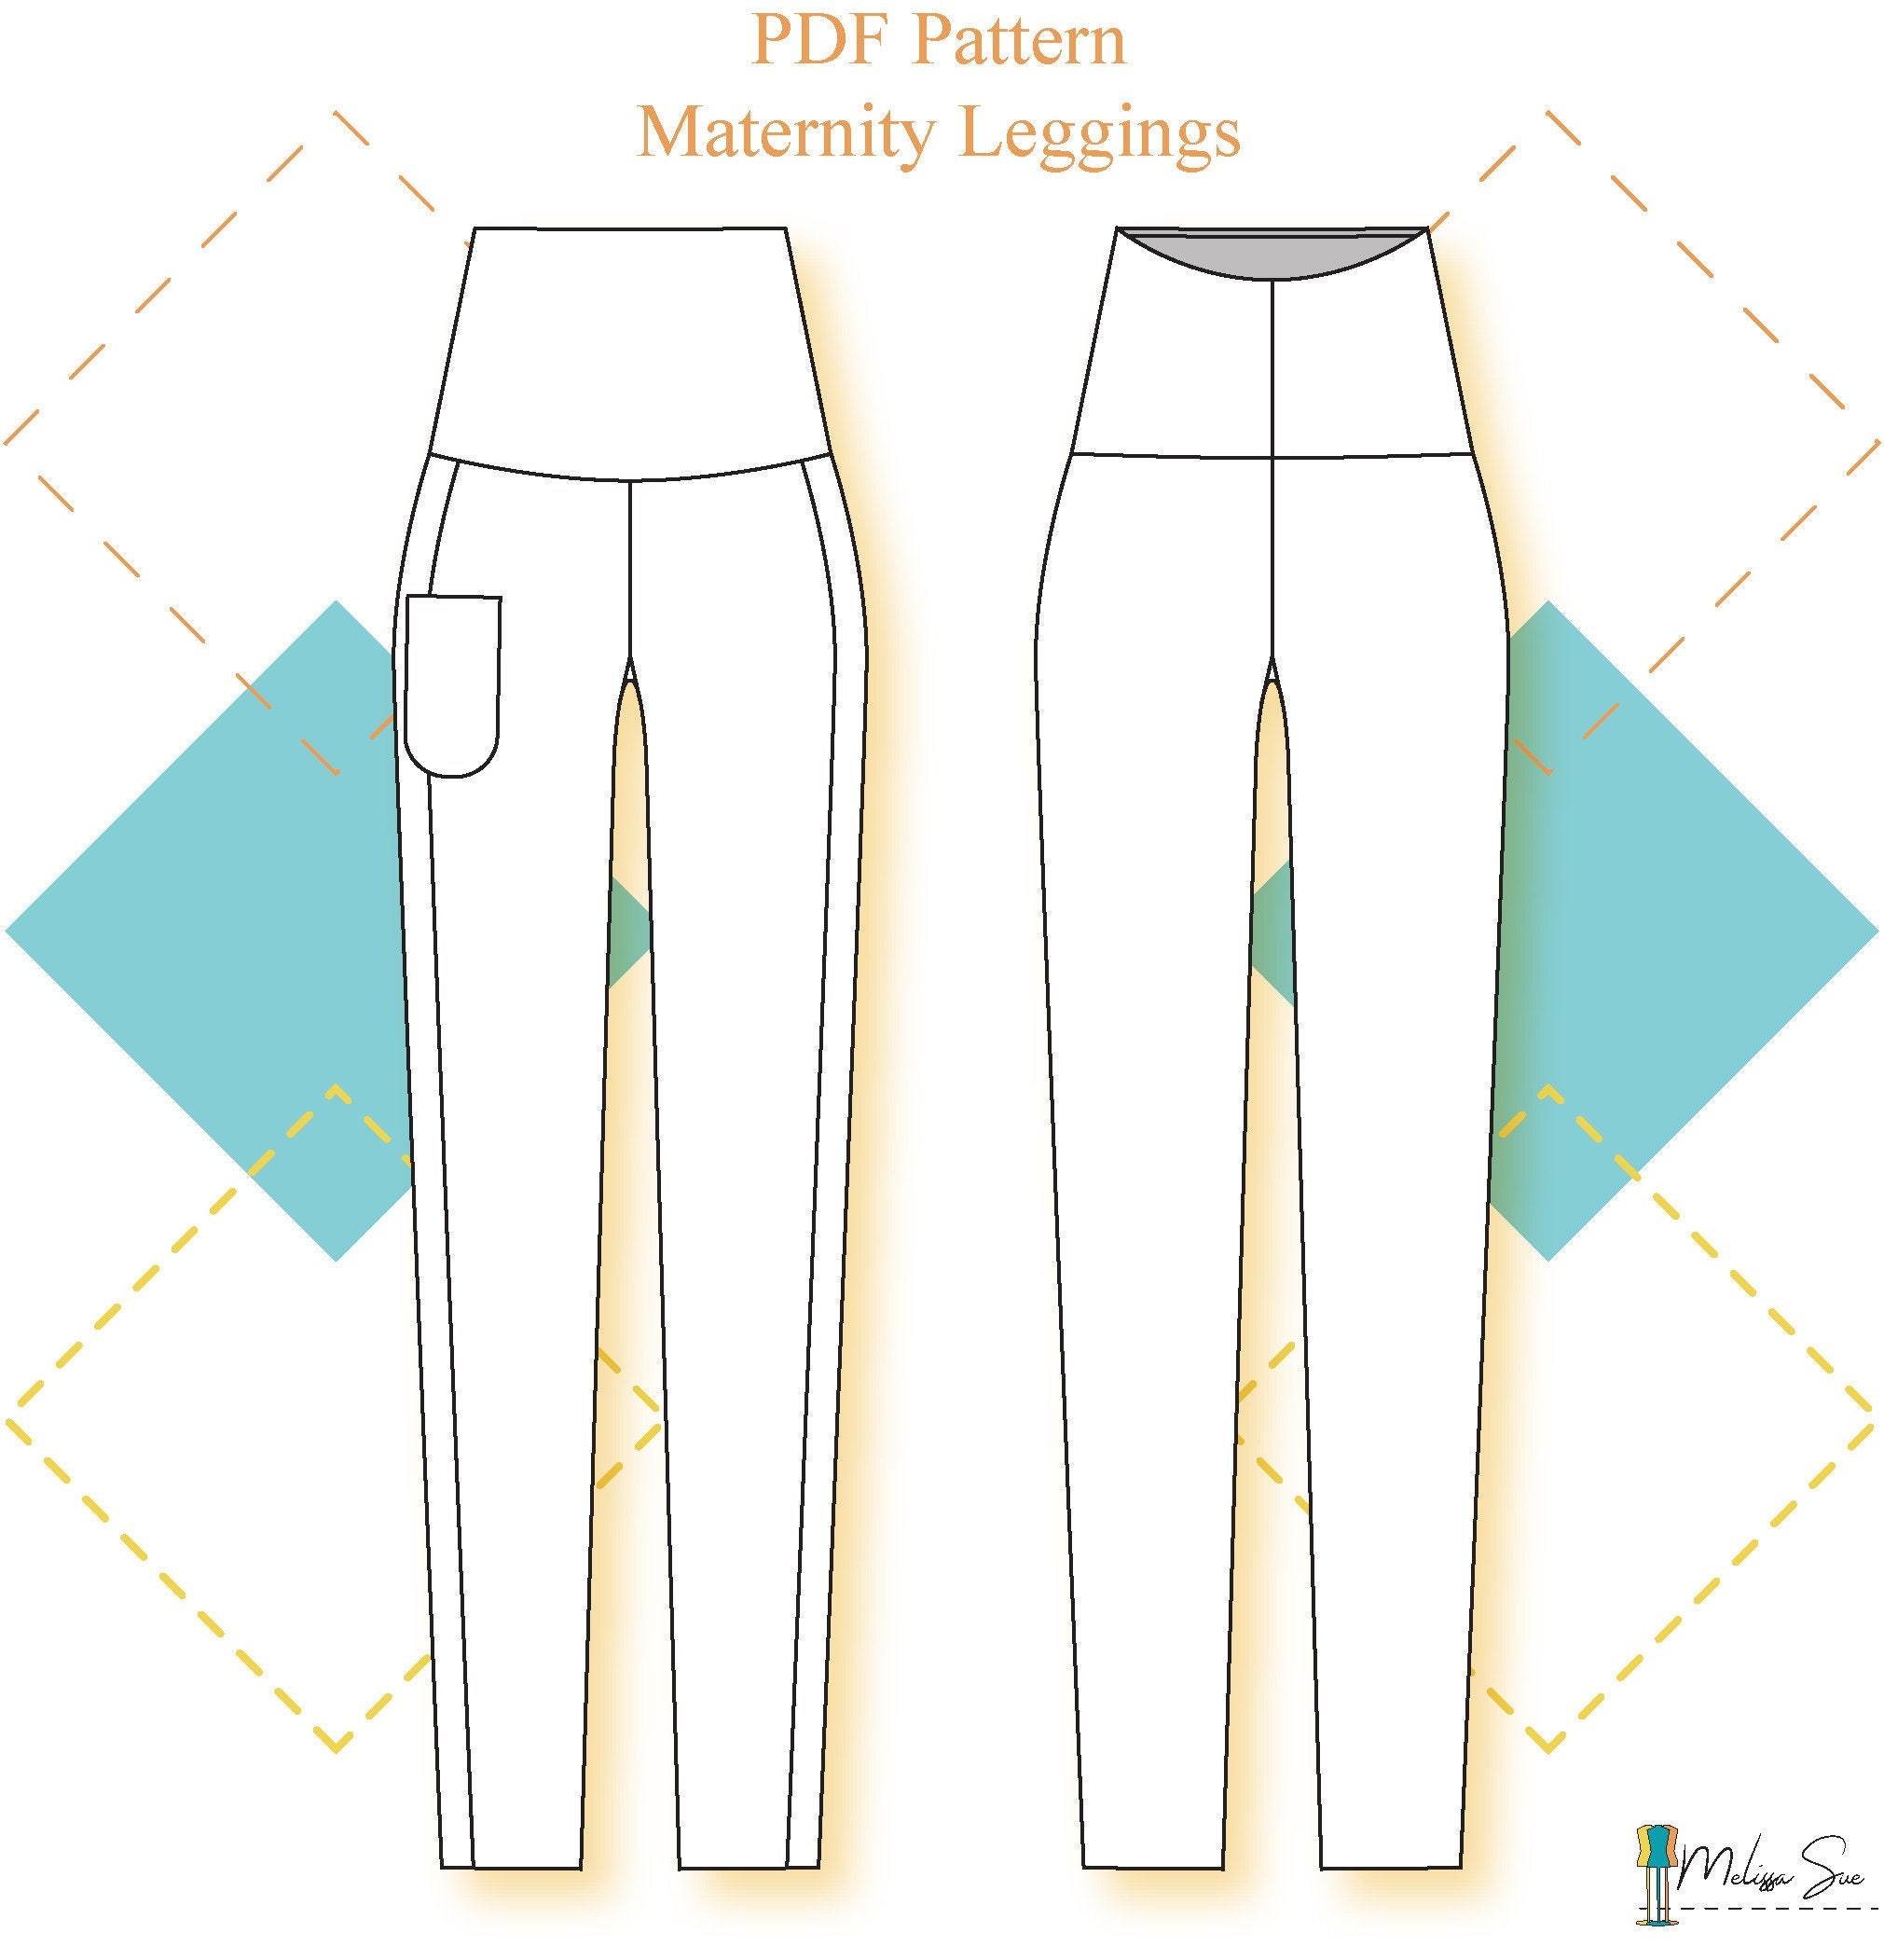 Maternity Leggings Pattern PDF, Sizes XS, S, M, L, XL